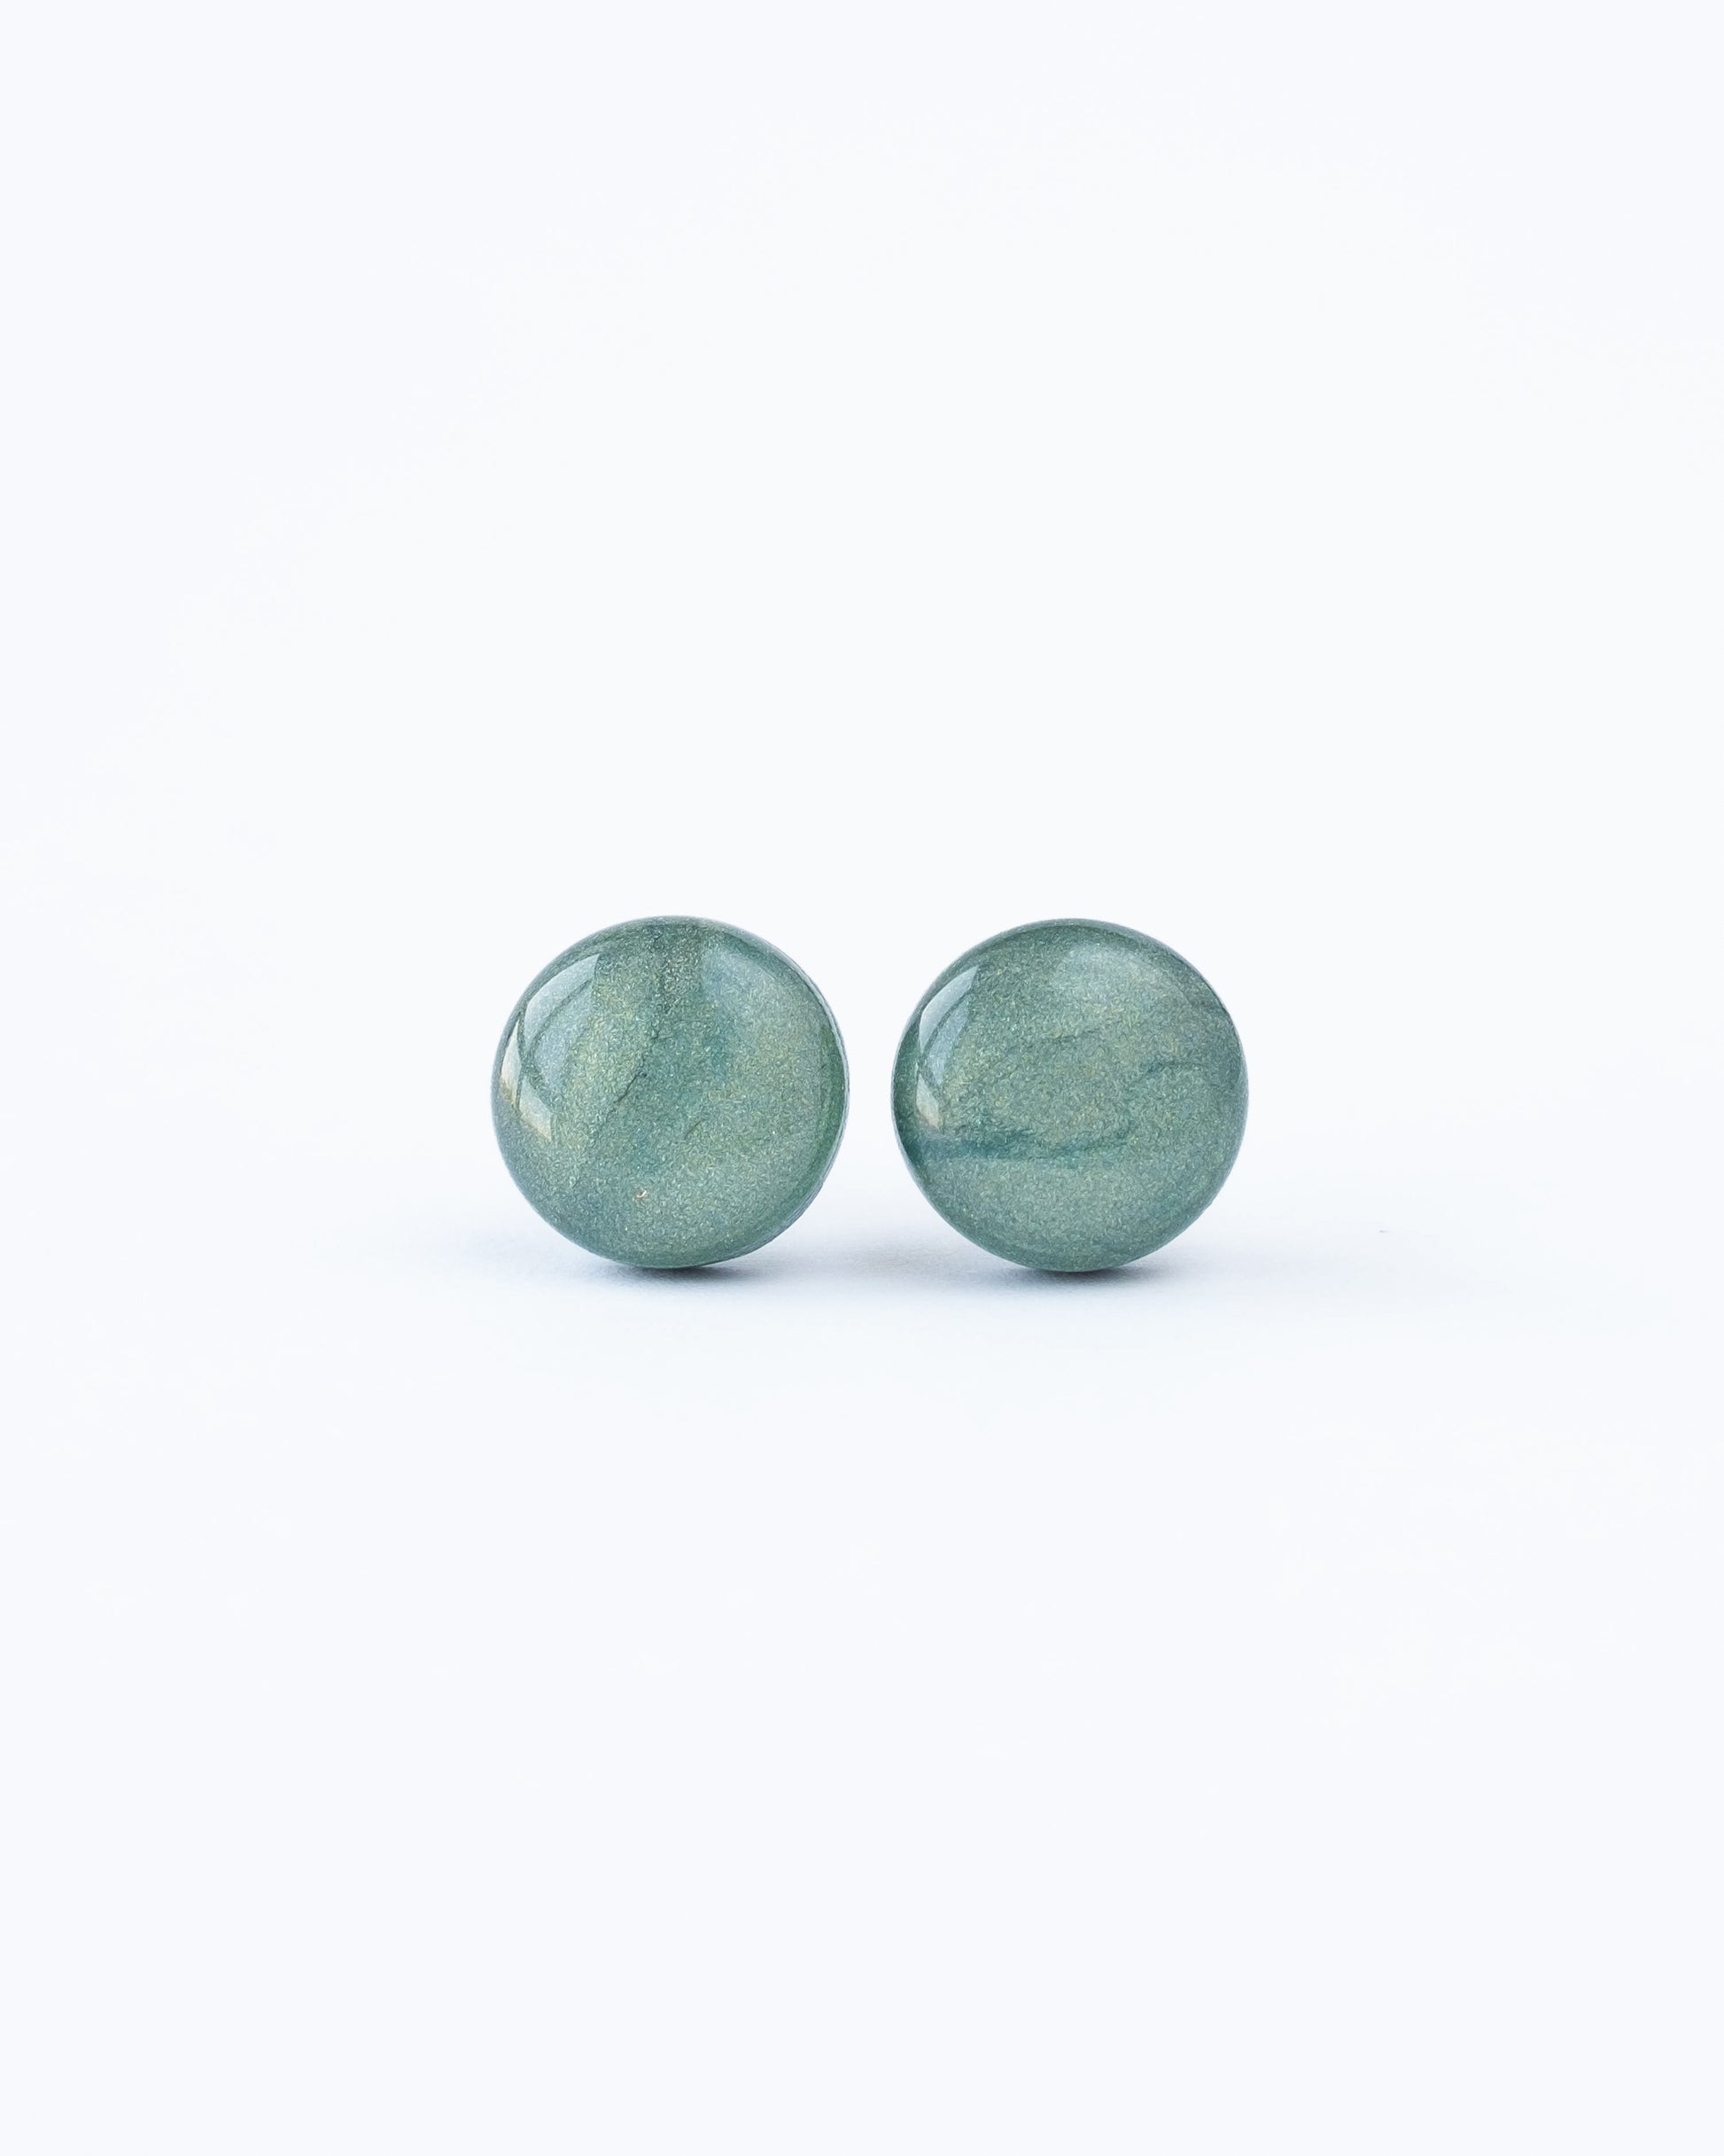 Green stellar stud earrings freeshipping - Ollijewelry